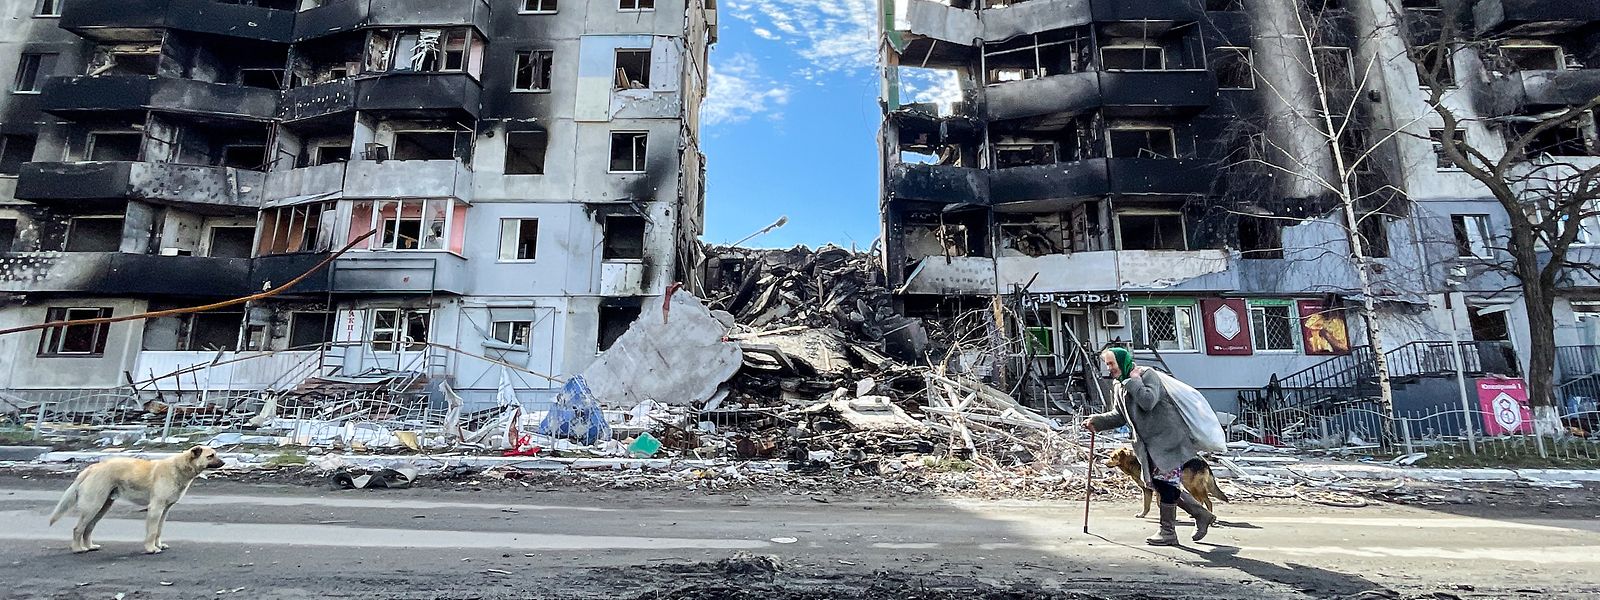 Borodjanka, nos arredores de Kiev, foi destruída pelos ataques russos. (Imagem de ZUMA Press W)